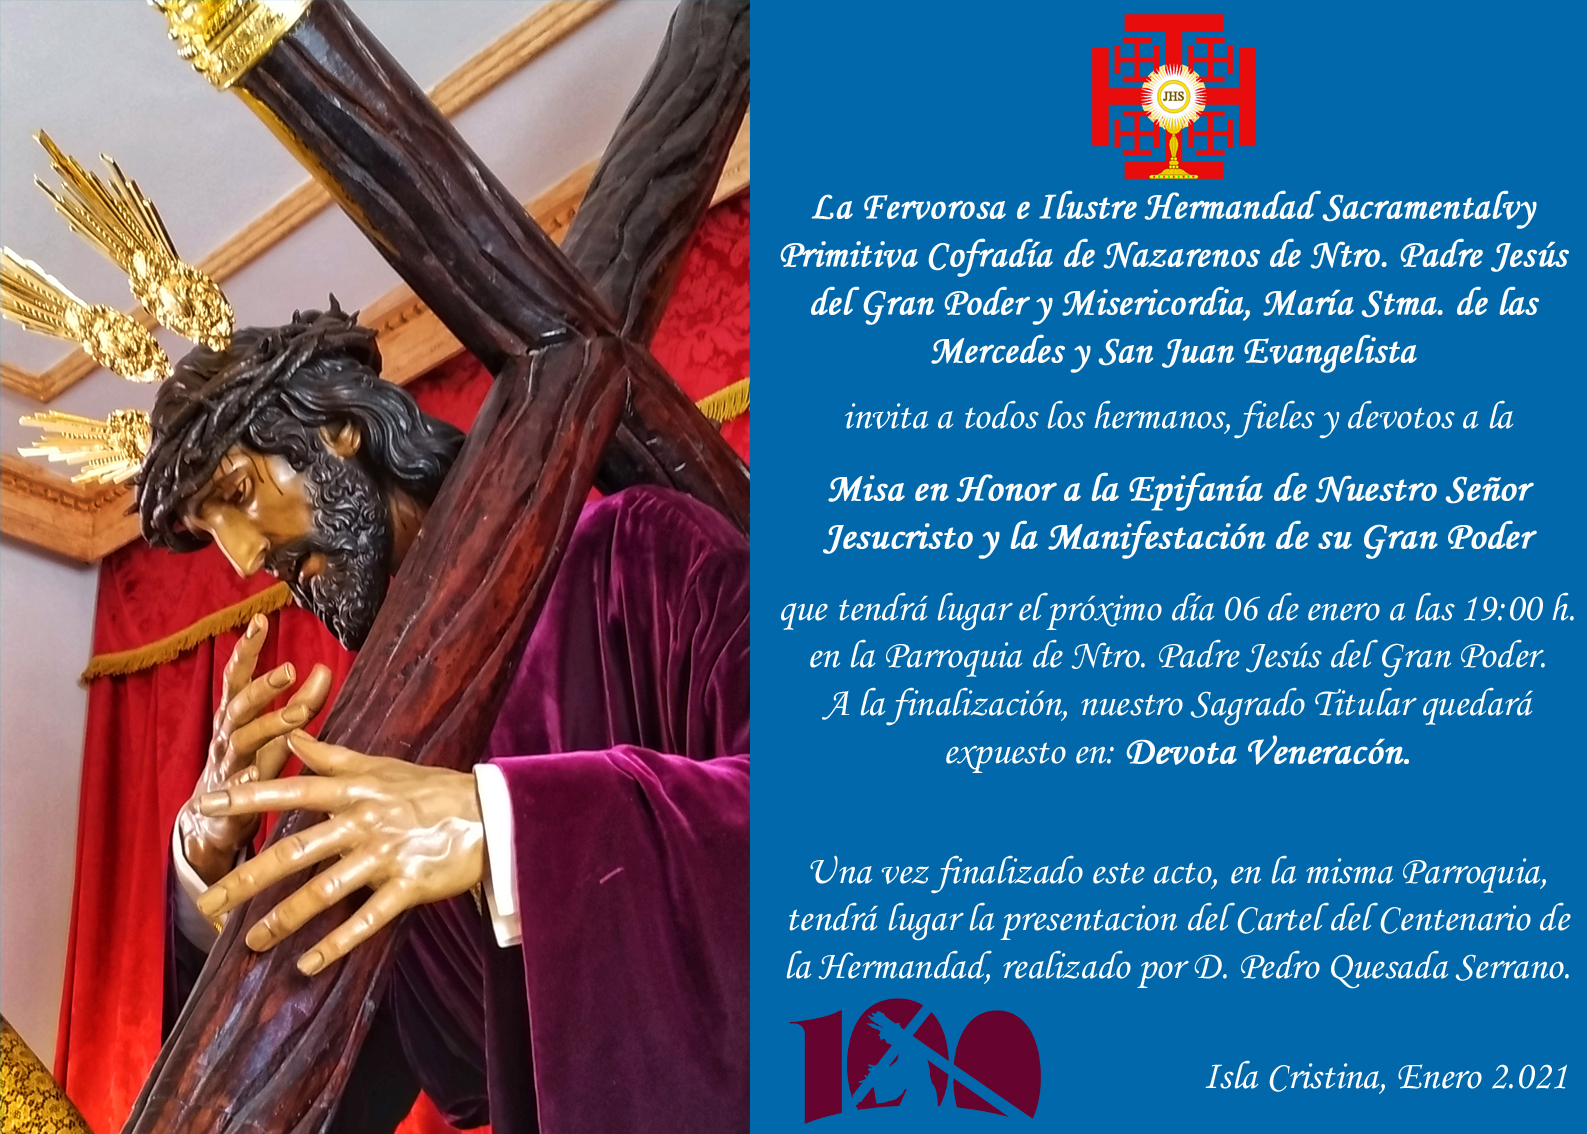 Misa Epifanía y Presentación del Cartel del Centenario de la Hdad. del Gran Poder de Isla Cristina